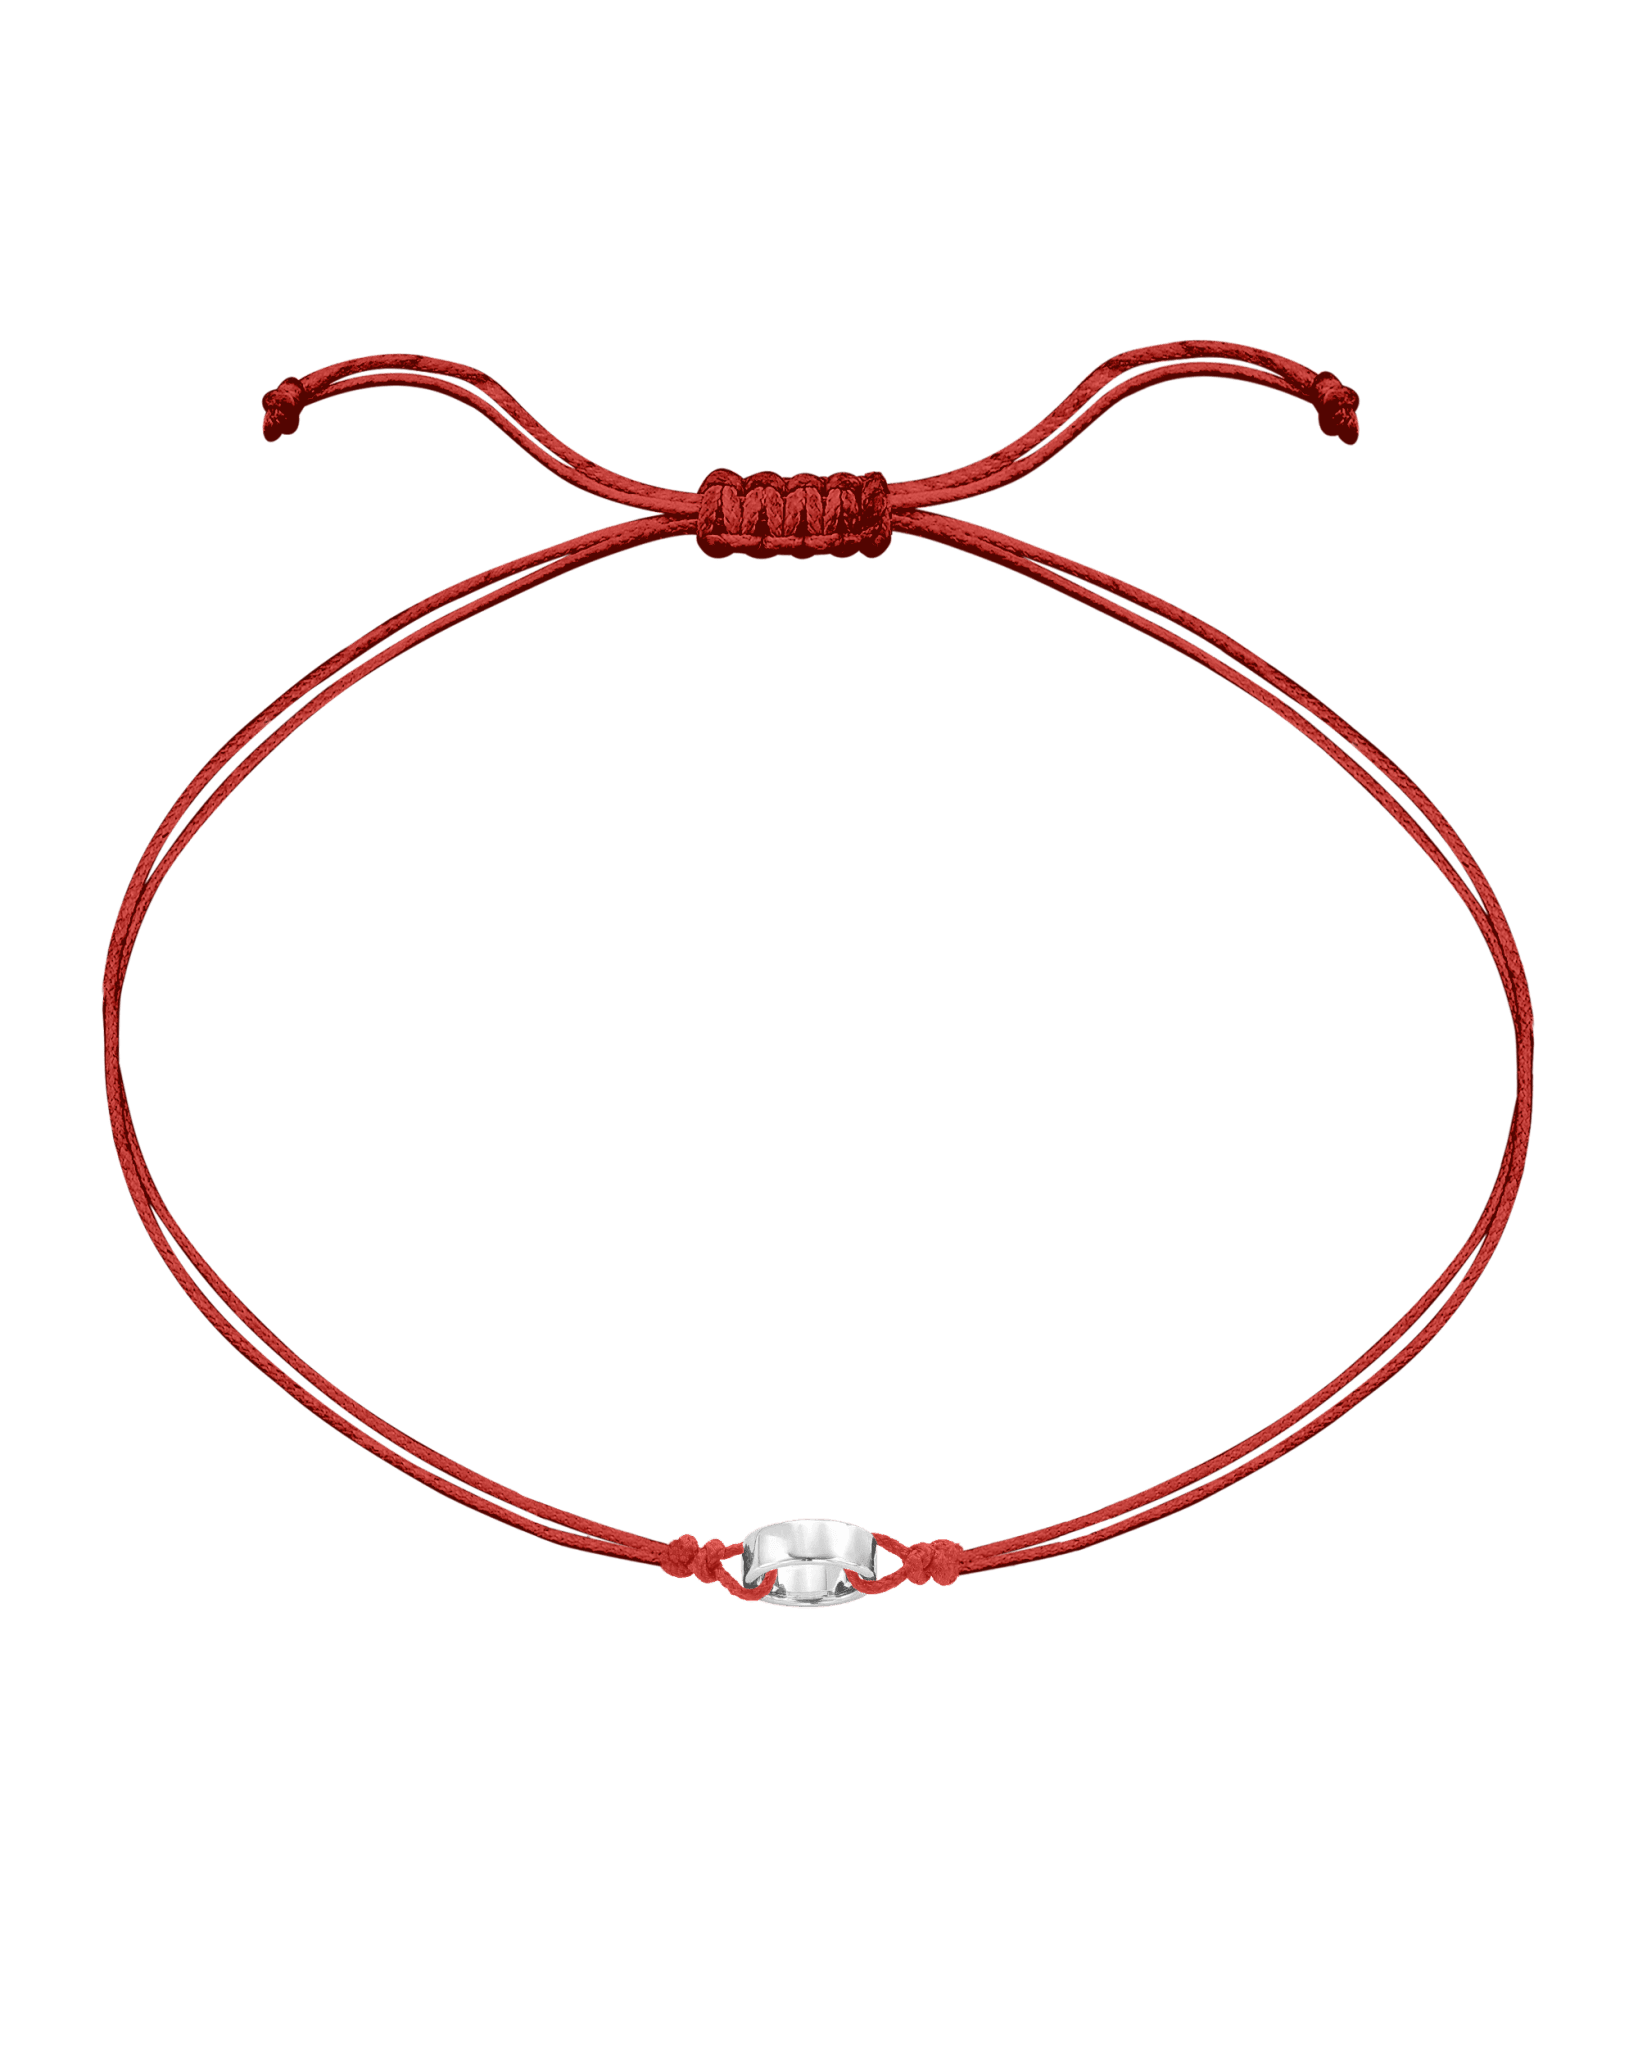 Engravable Links of Love - 925 Sterling Silver Bracelets magal-dev 1 Red 